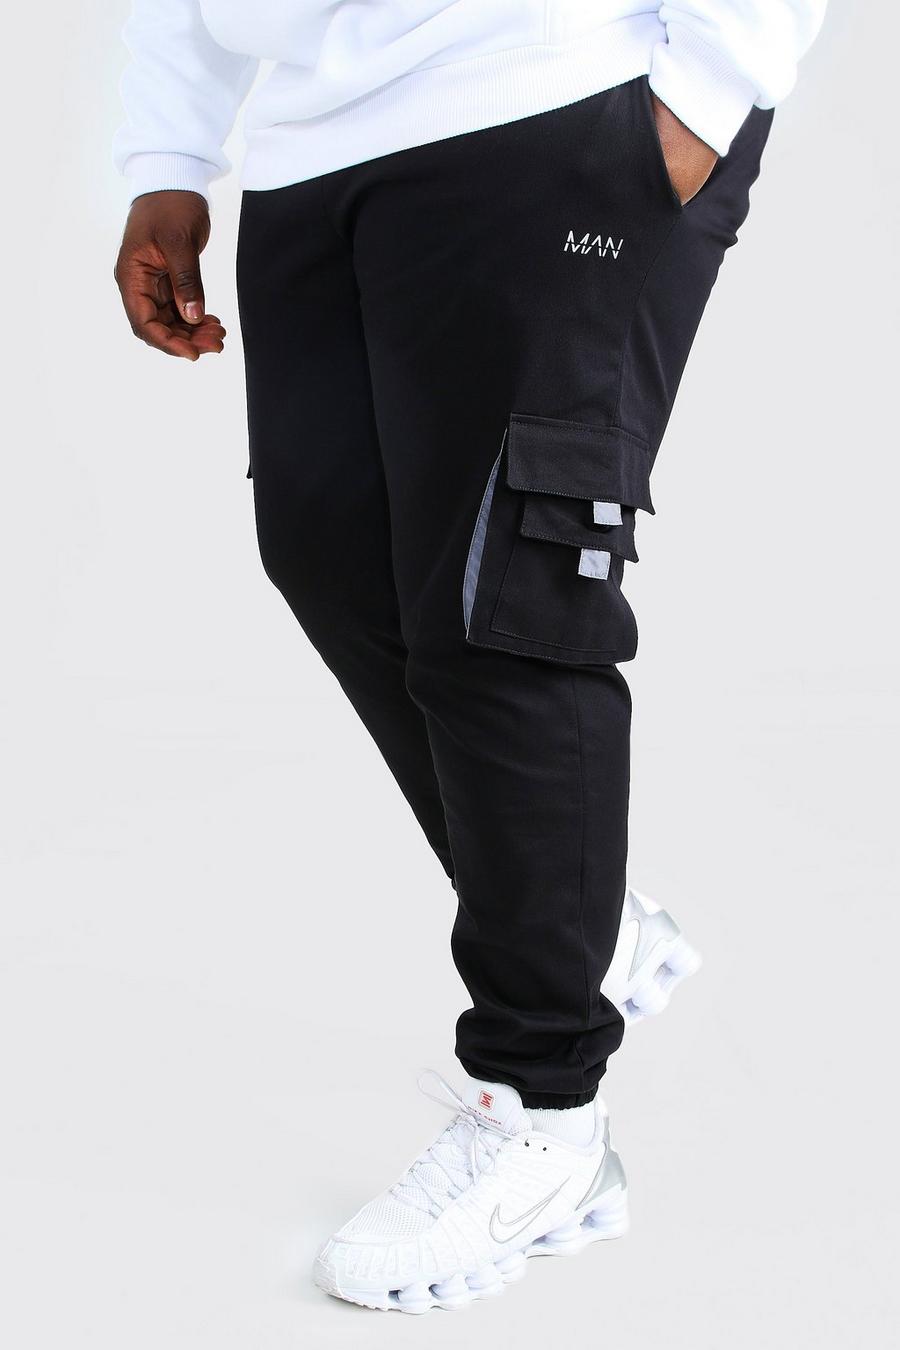 שחור מכנסי ריצה ארוגים בסגנון דגמ"ח עם לשונית וכיתוב MAN למידות גדולות image number 1